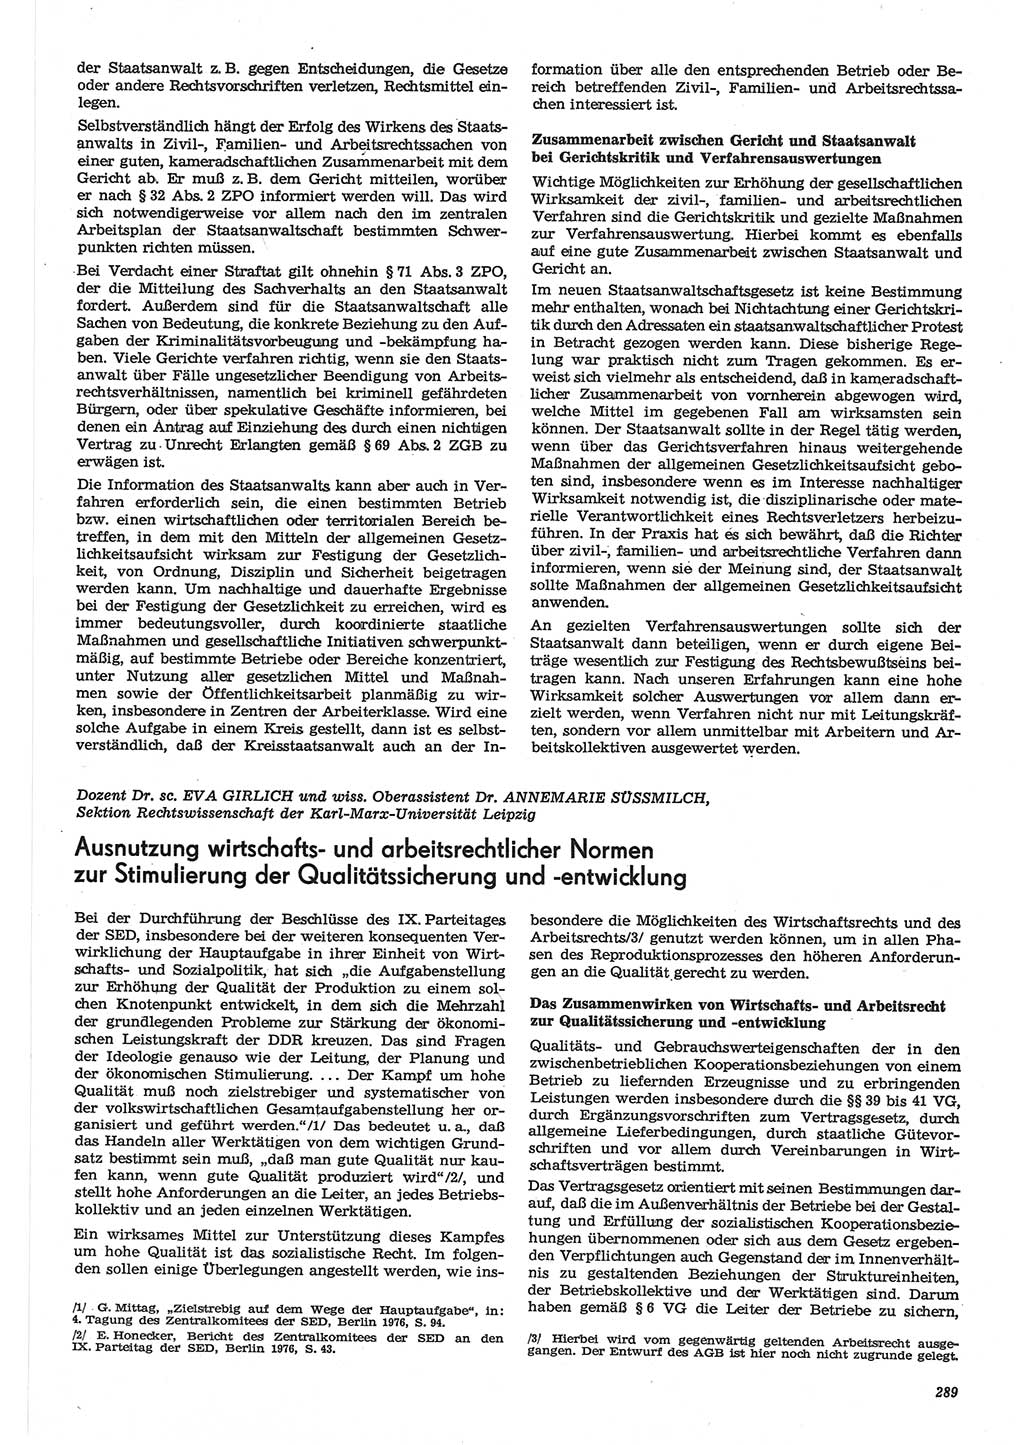 Neue Justiz (NJ), Zeitschrift für Recht und Rechtswissenschaft-Zeitschrift, sozialistisches Recht und Gesetzlichkeit, 31. Jahrgang 1977, Seite 289 (NJ DDR 1977, S. 289)